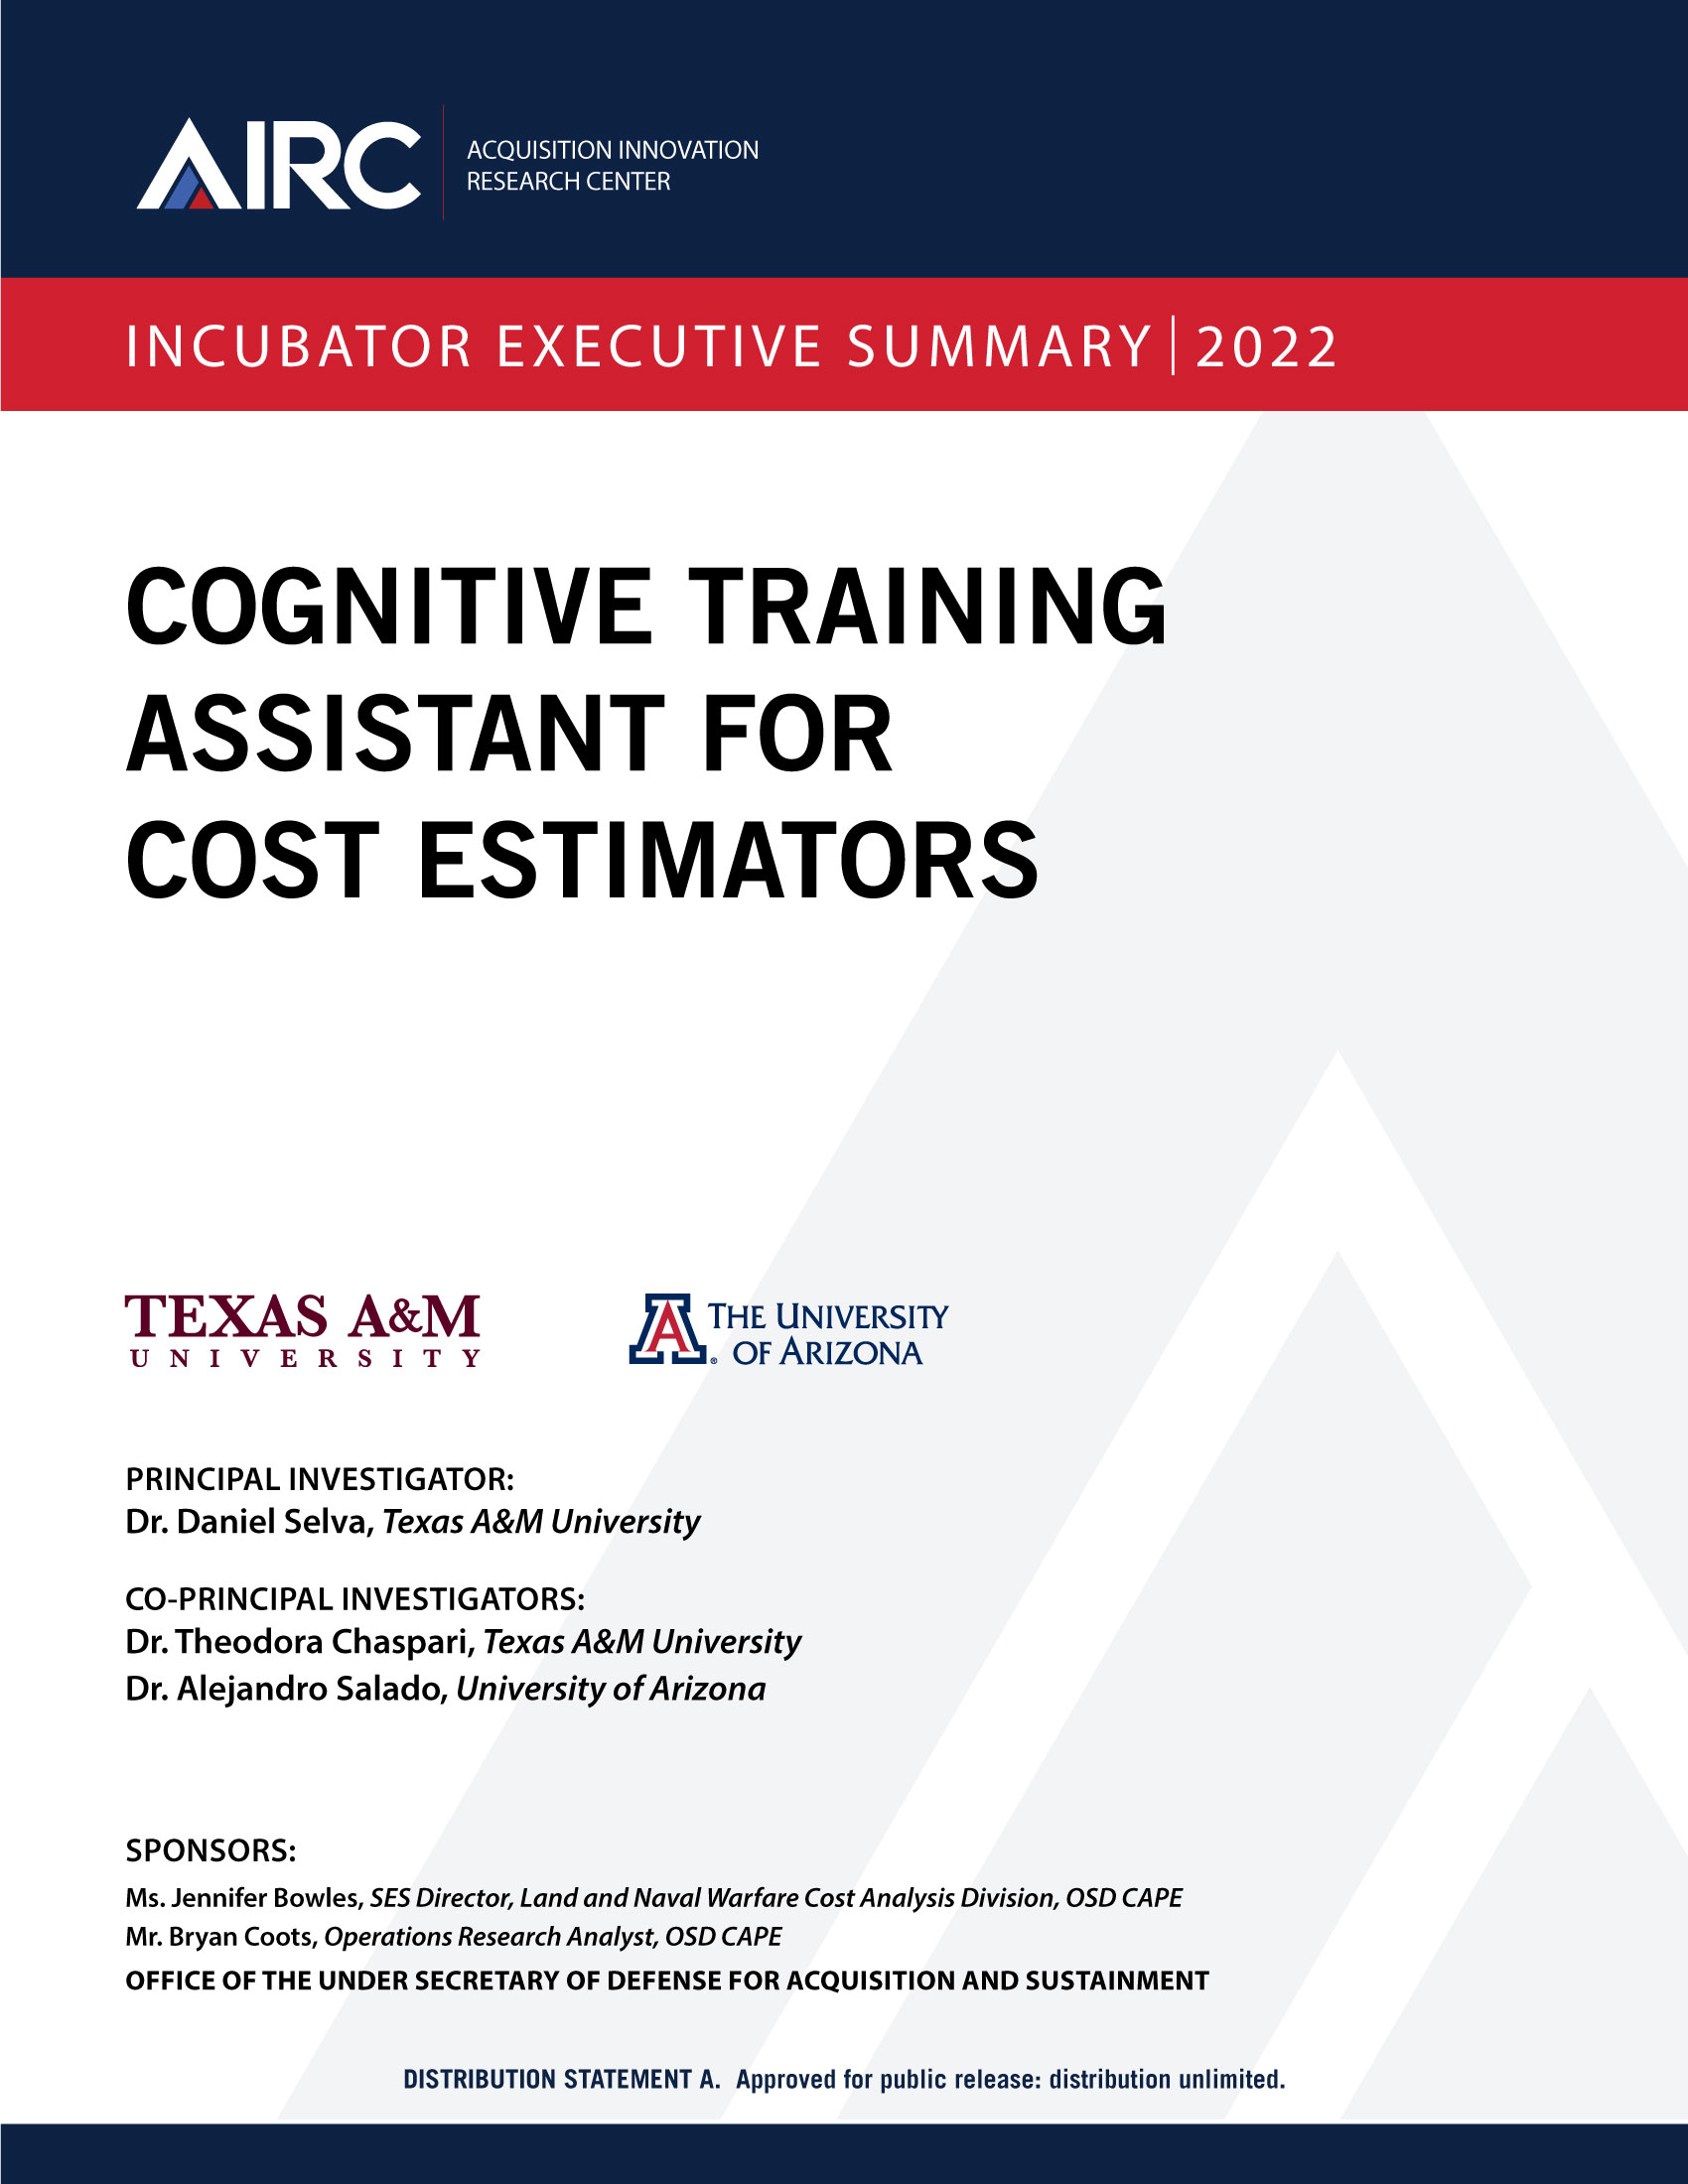 Cognitive Training Assistant for Cost Estimators - The Acquisition